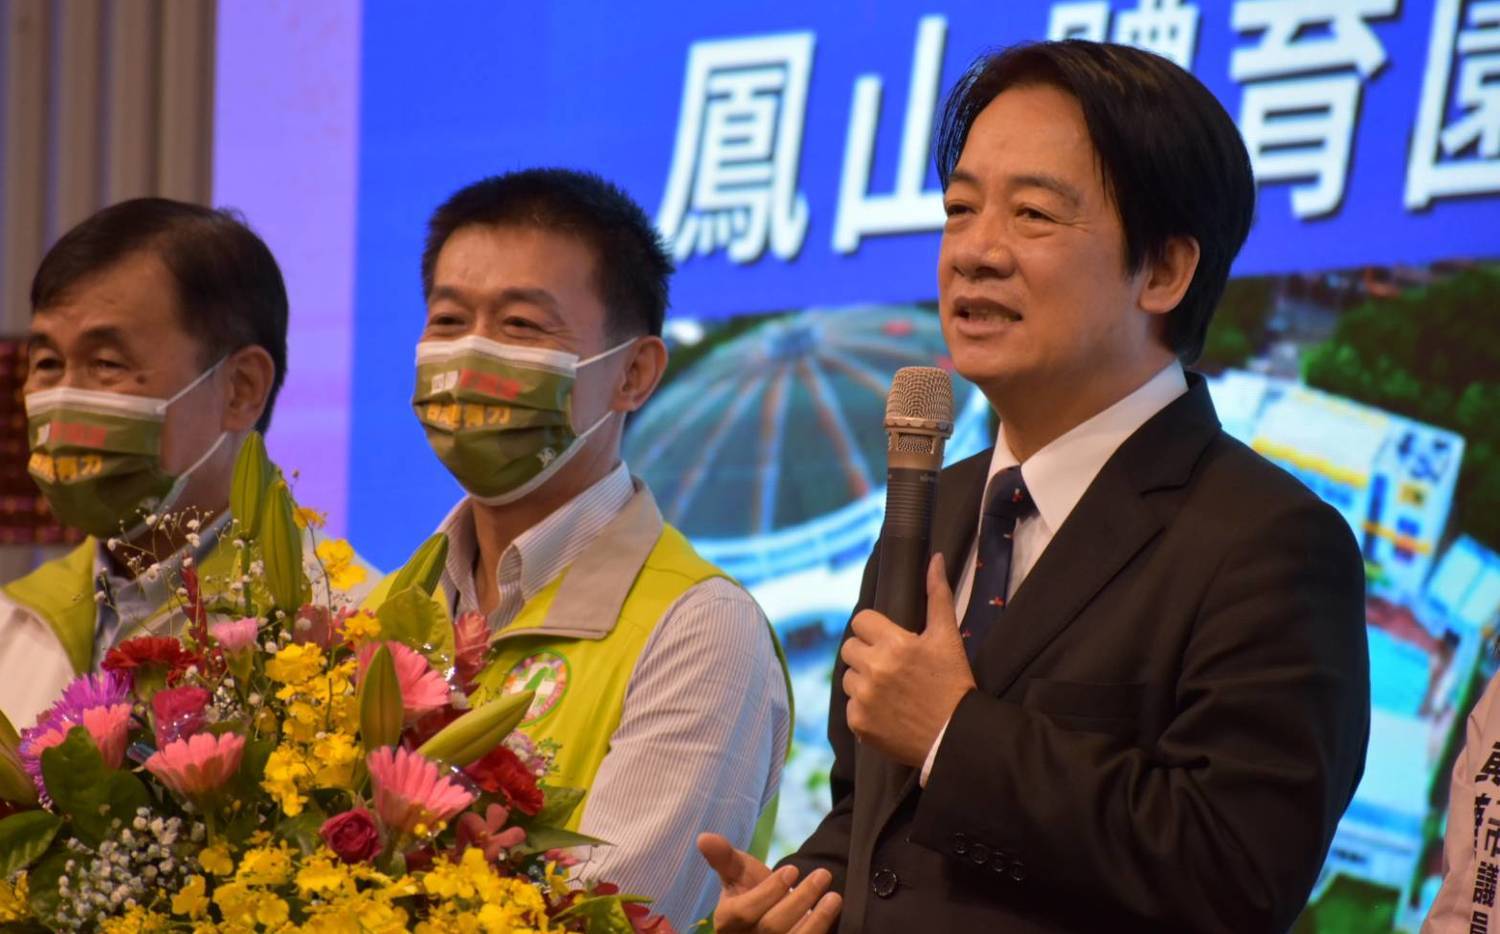 立委許智傑呼籲高雄市民力挺公投「四個不同意」讓台灣更有力 | 政治 |